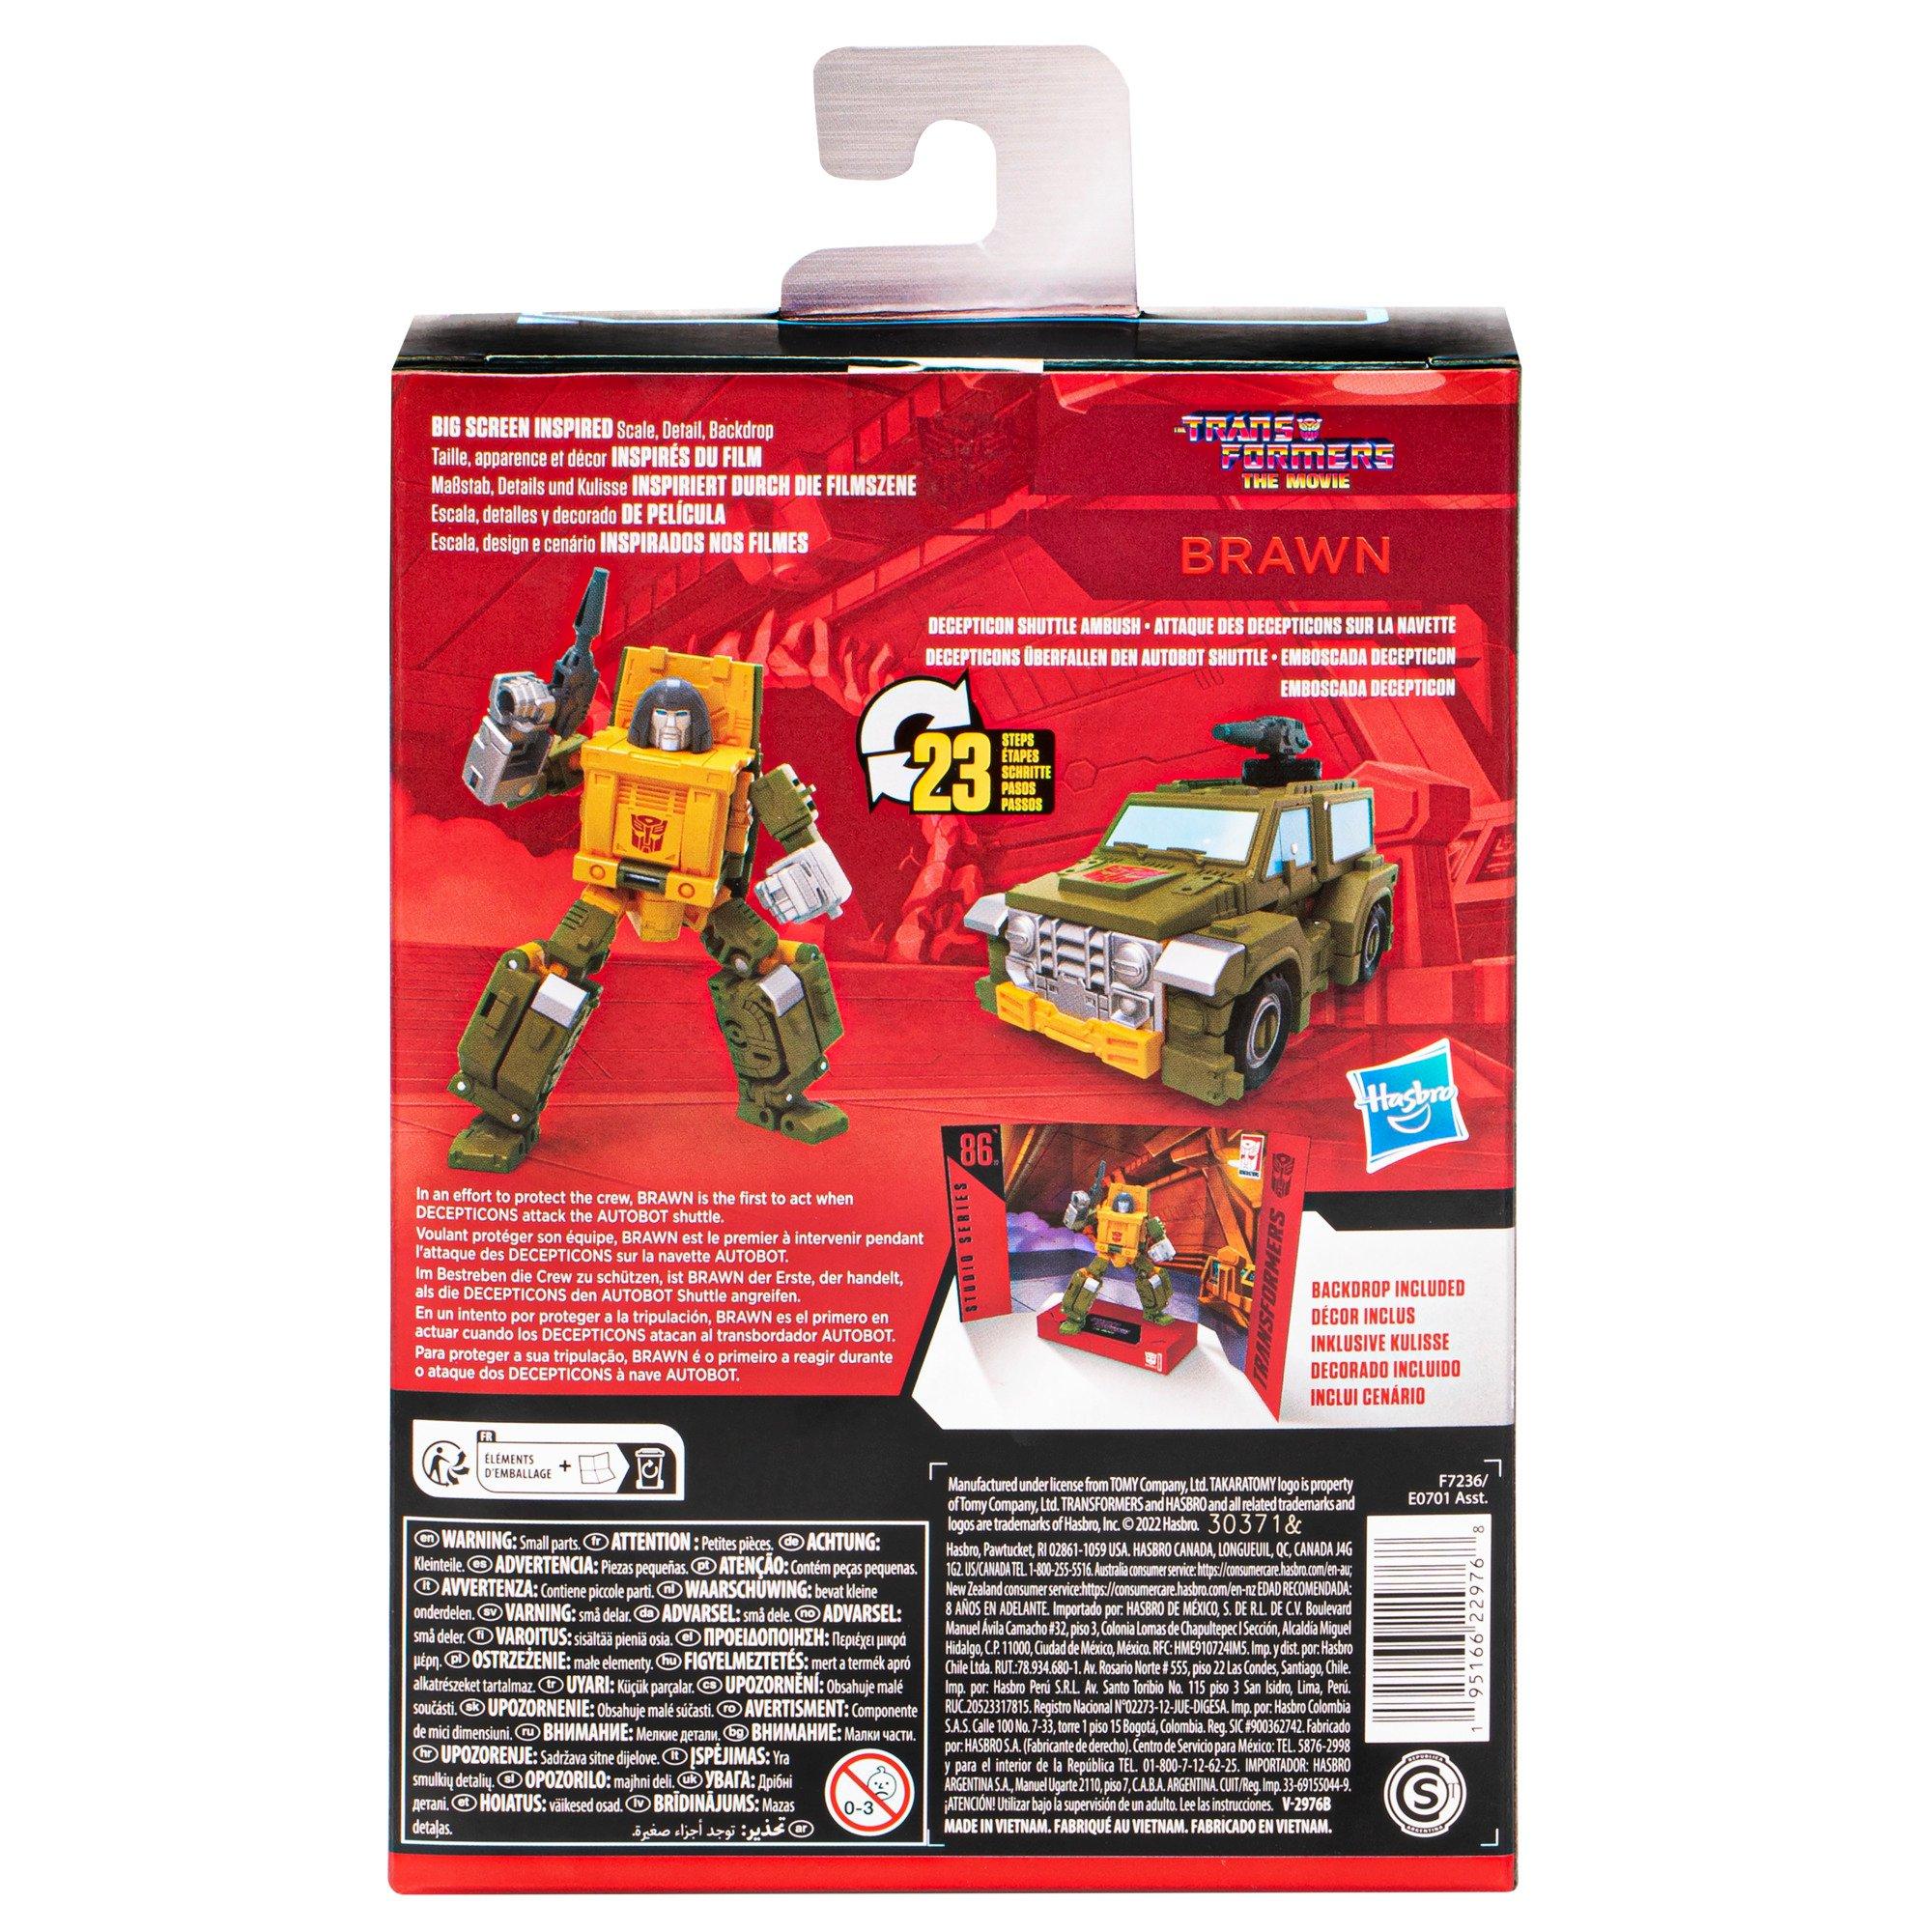 Hasbro Transformers Studio Series Deluxe Class Bumblebee 4.5-in Action  Figure | GameStop